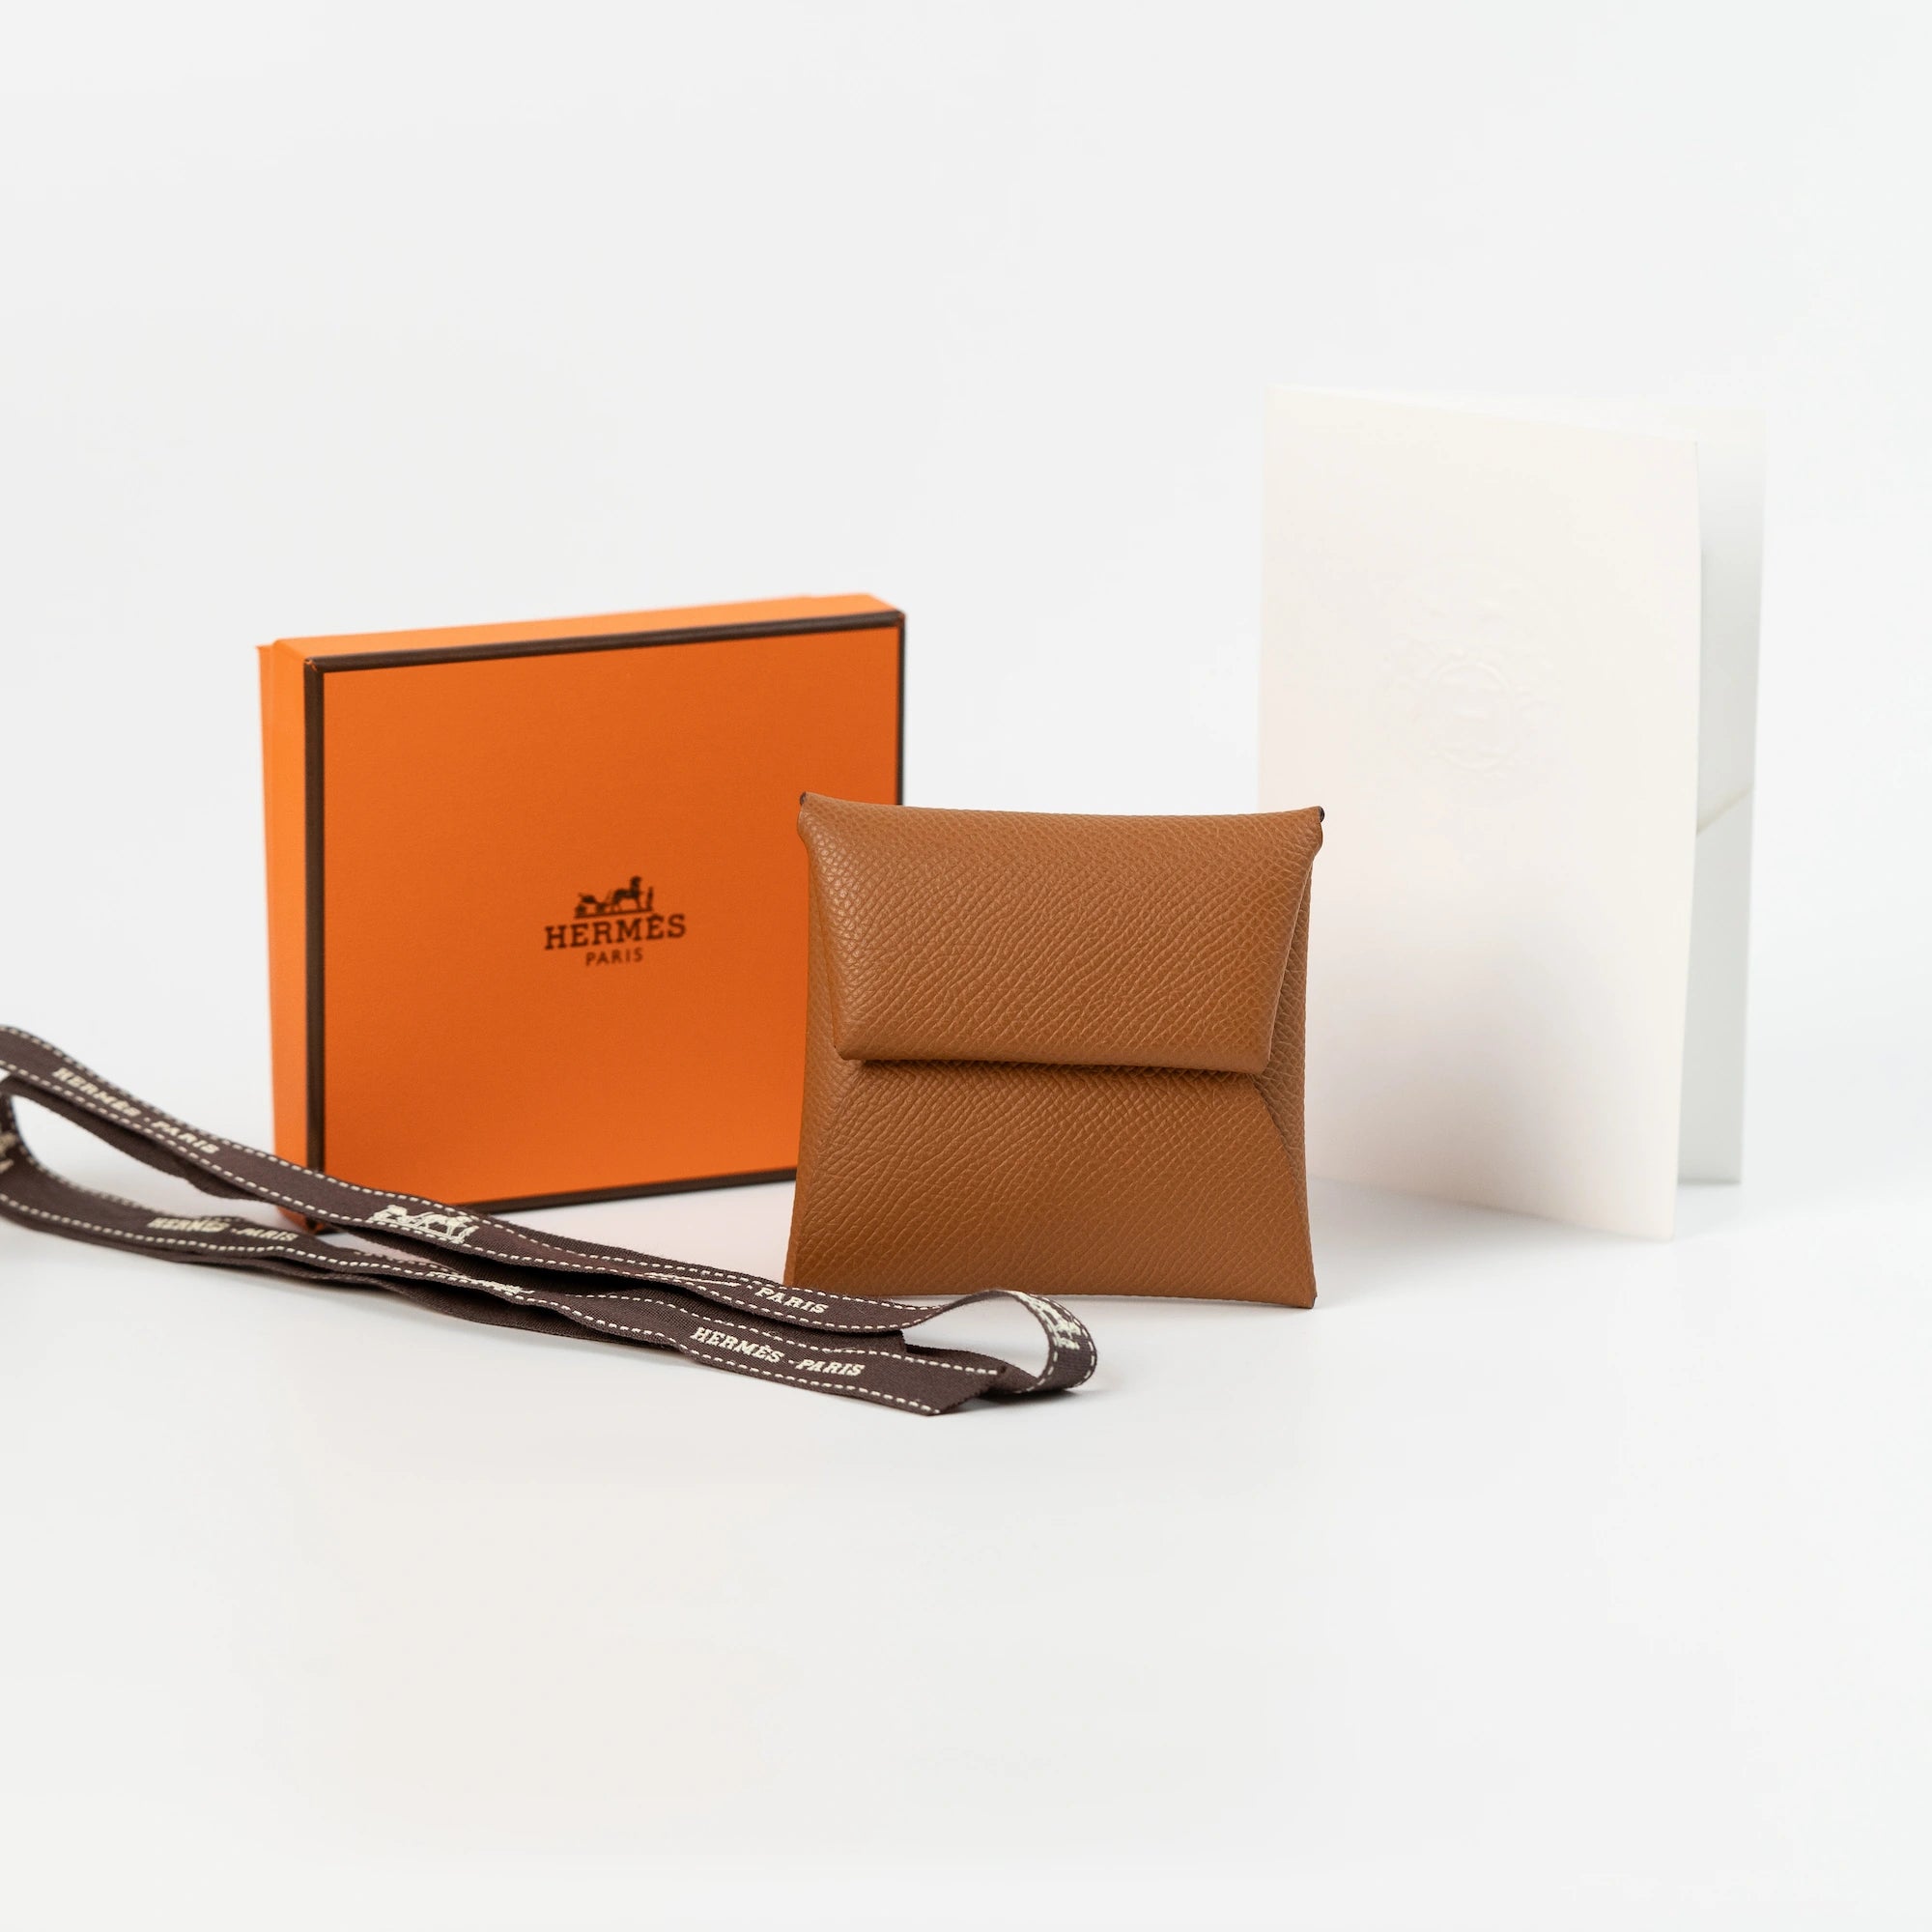 Hermès "Bastia" Portmonnaie in einem cognacfarbenen Leder zusammen mit dem Lieferumfang, bestehend aus orangener Hermes Schachtel und Papieren